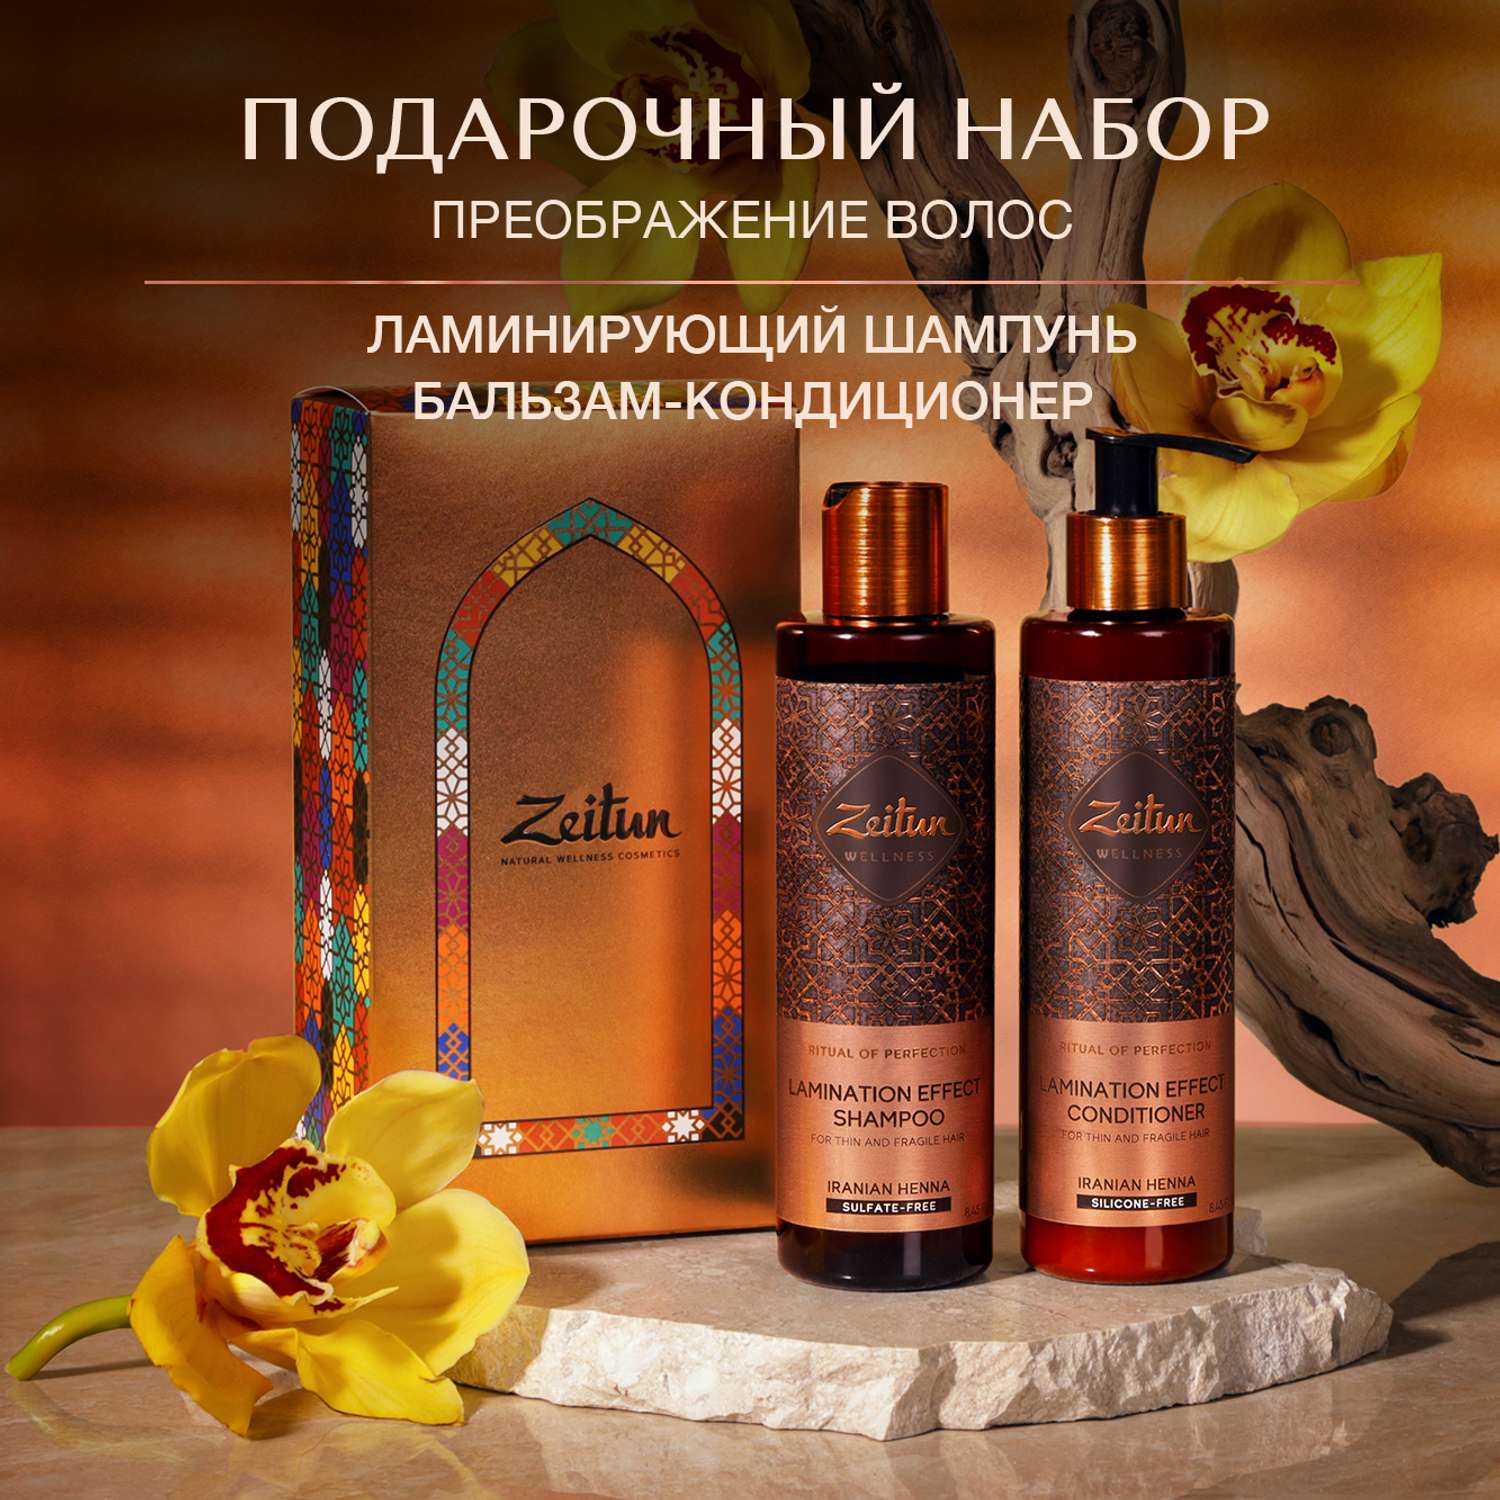 Подарочный набор Zeitun Преображение волос шампунь и бальзам с эффектом ламинирования - фото 2